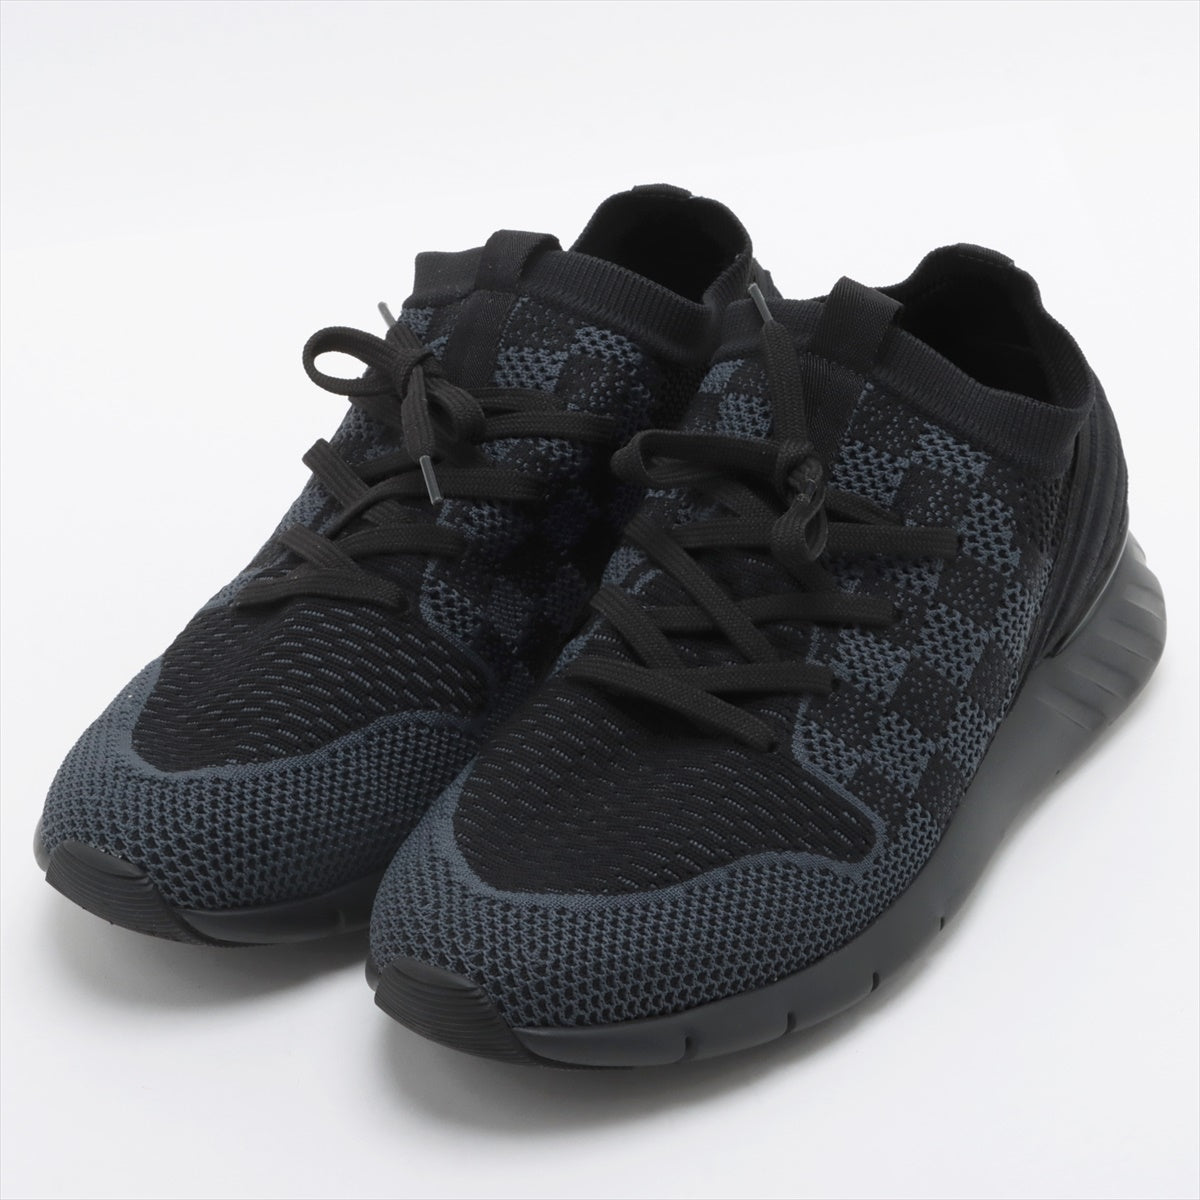 Louis Vuitton Fast lane line Knit Sneakers 6 Men's Black x Gray Damier